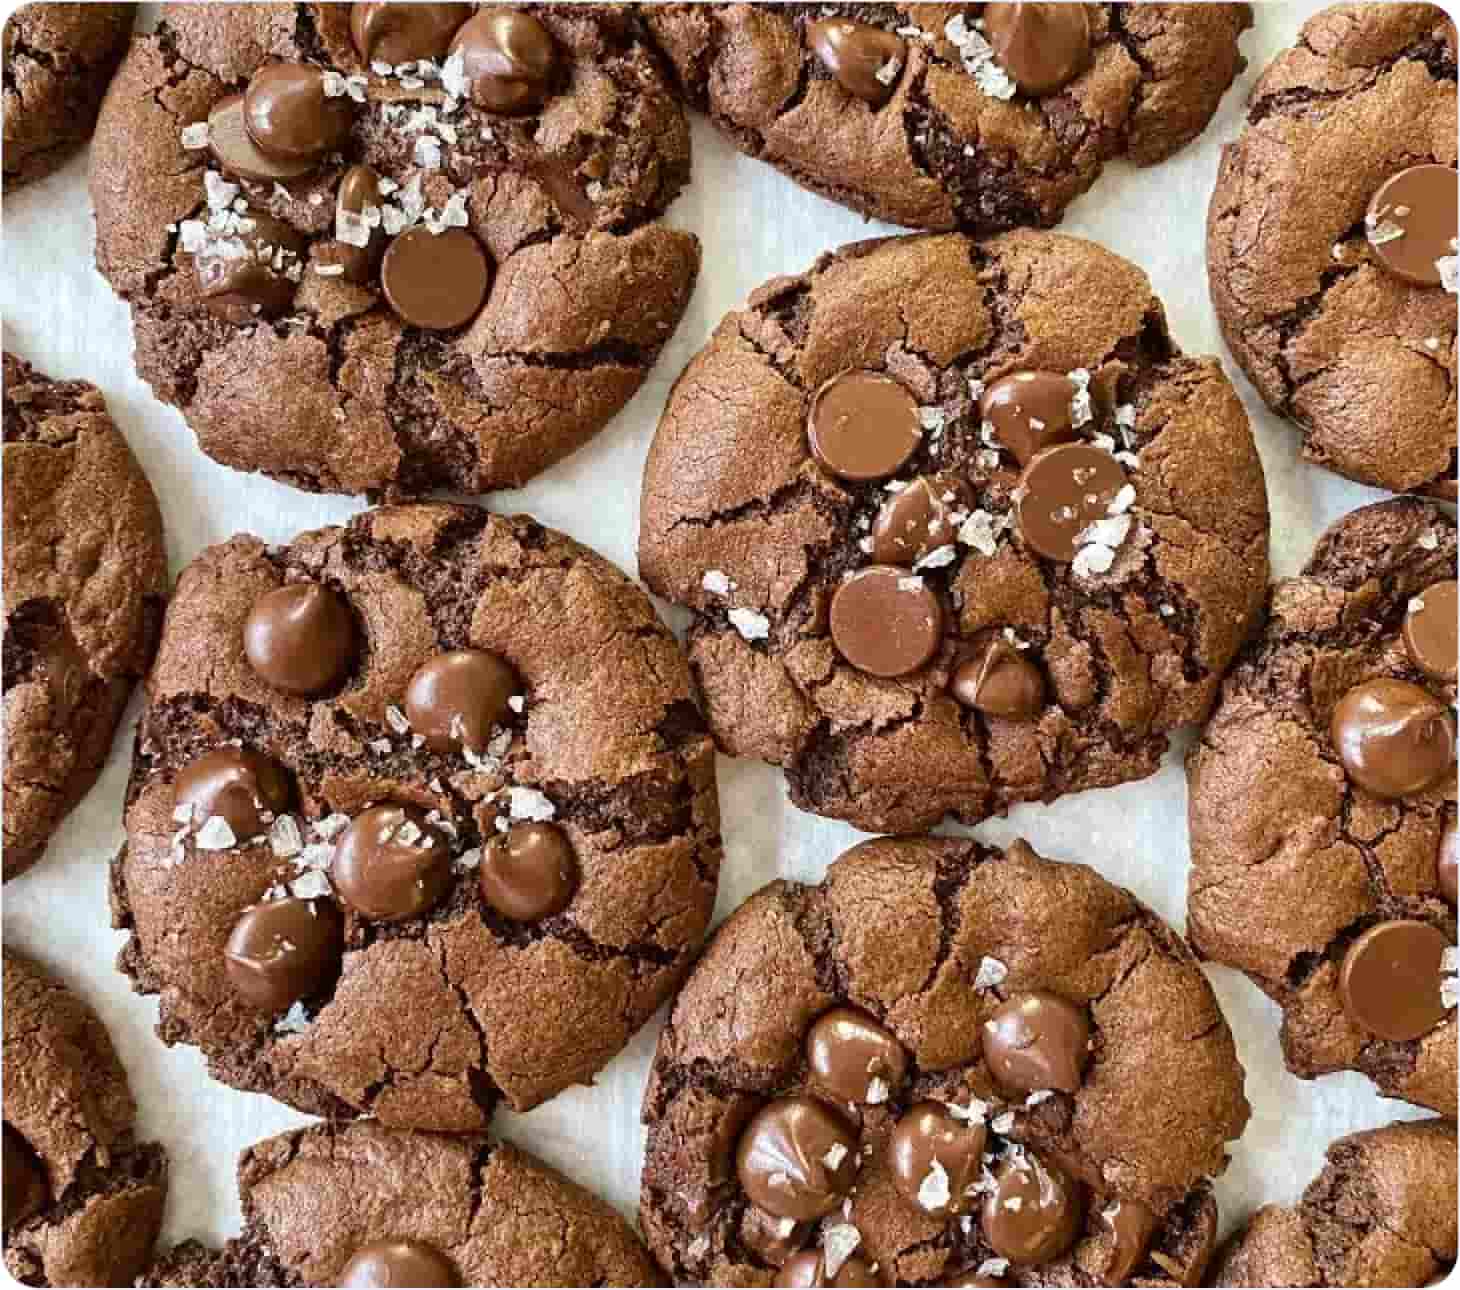 Baking double chocolate Christmas cookies